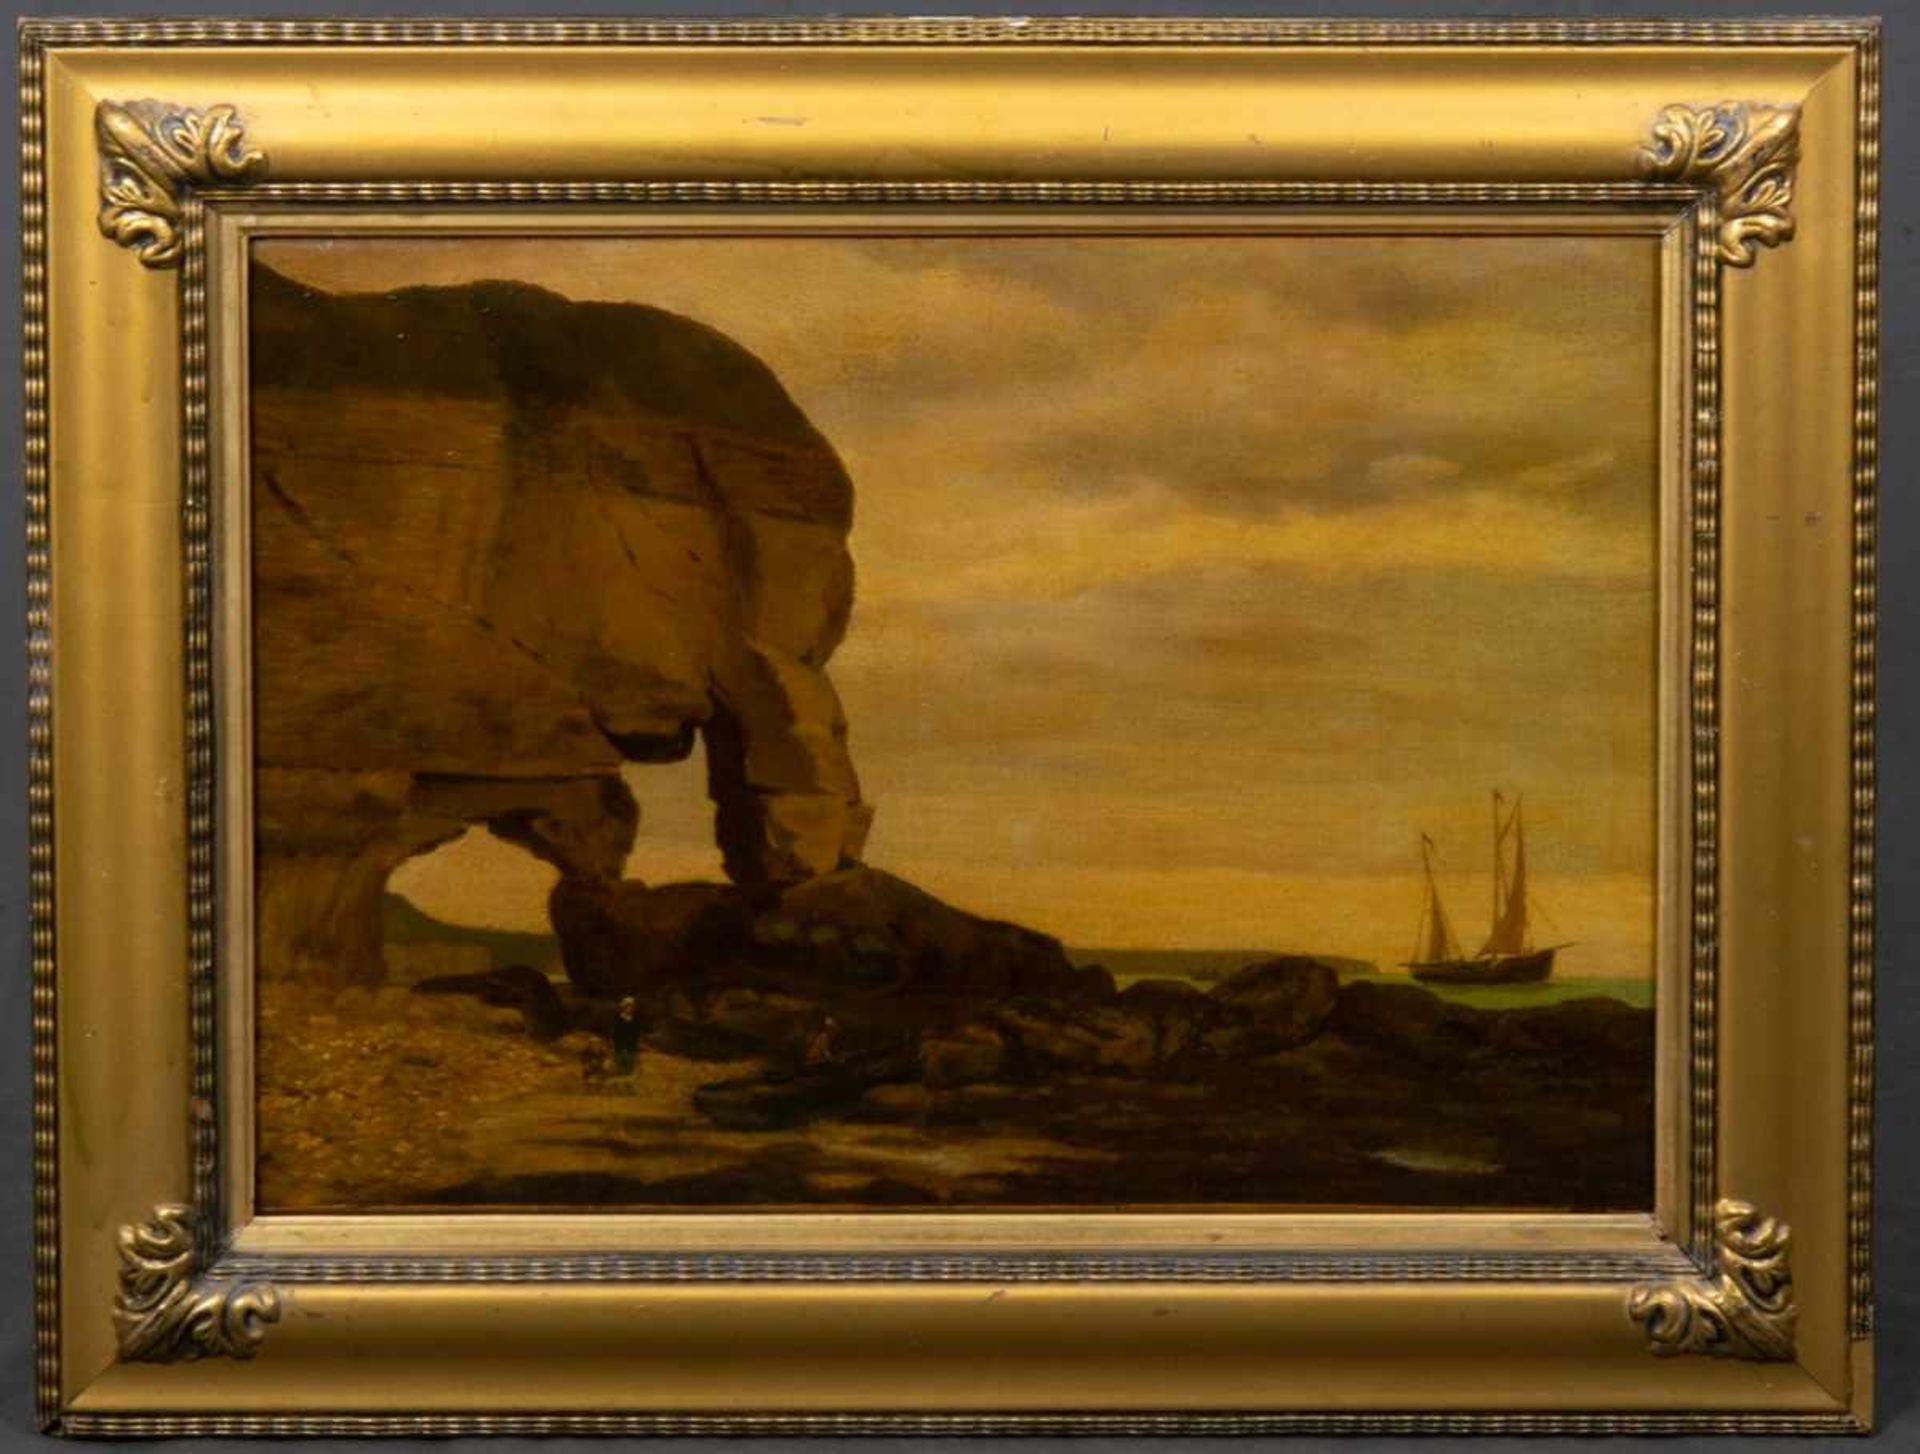 "Atlantikküste", Gemälde, Öl auf Leinwand, ca. 37 x 54 cm, signiert & datiert unten rechts: "Louis